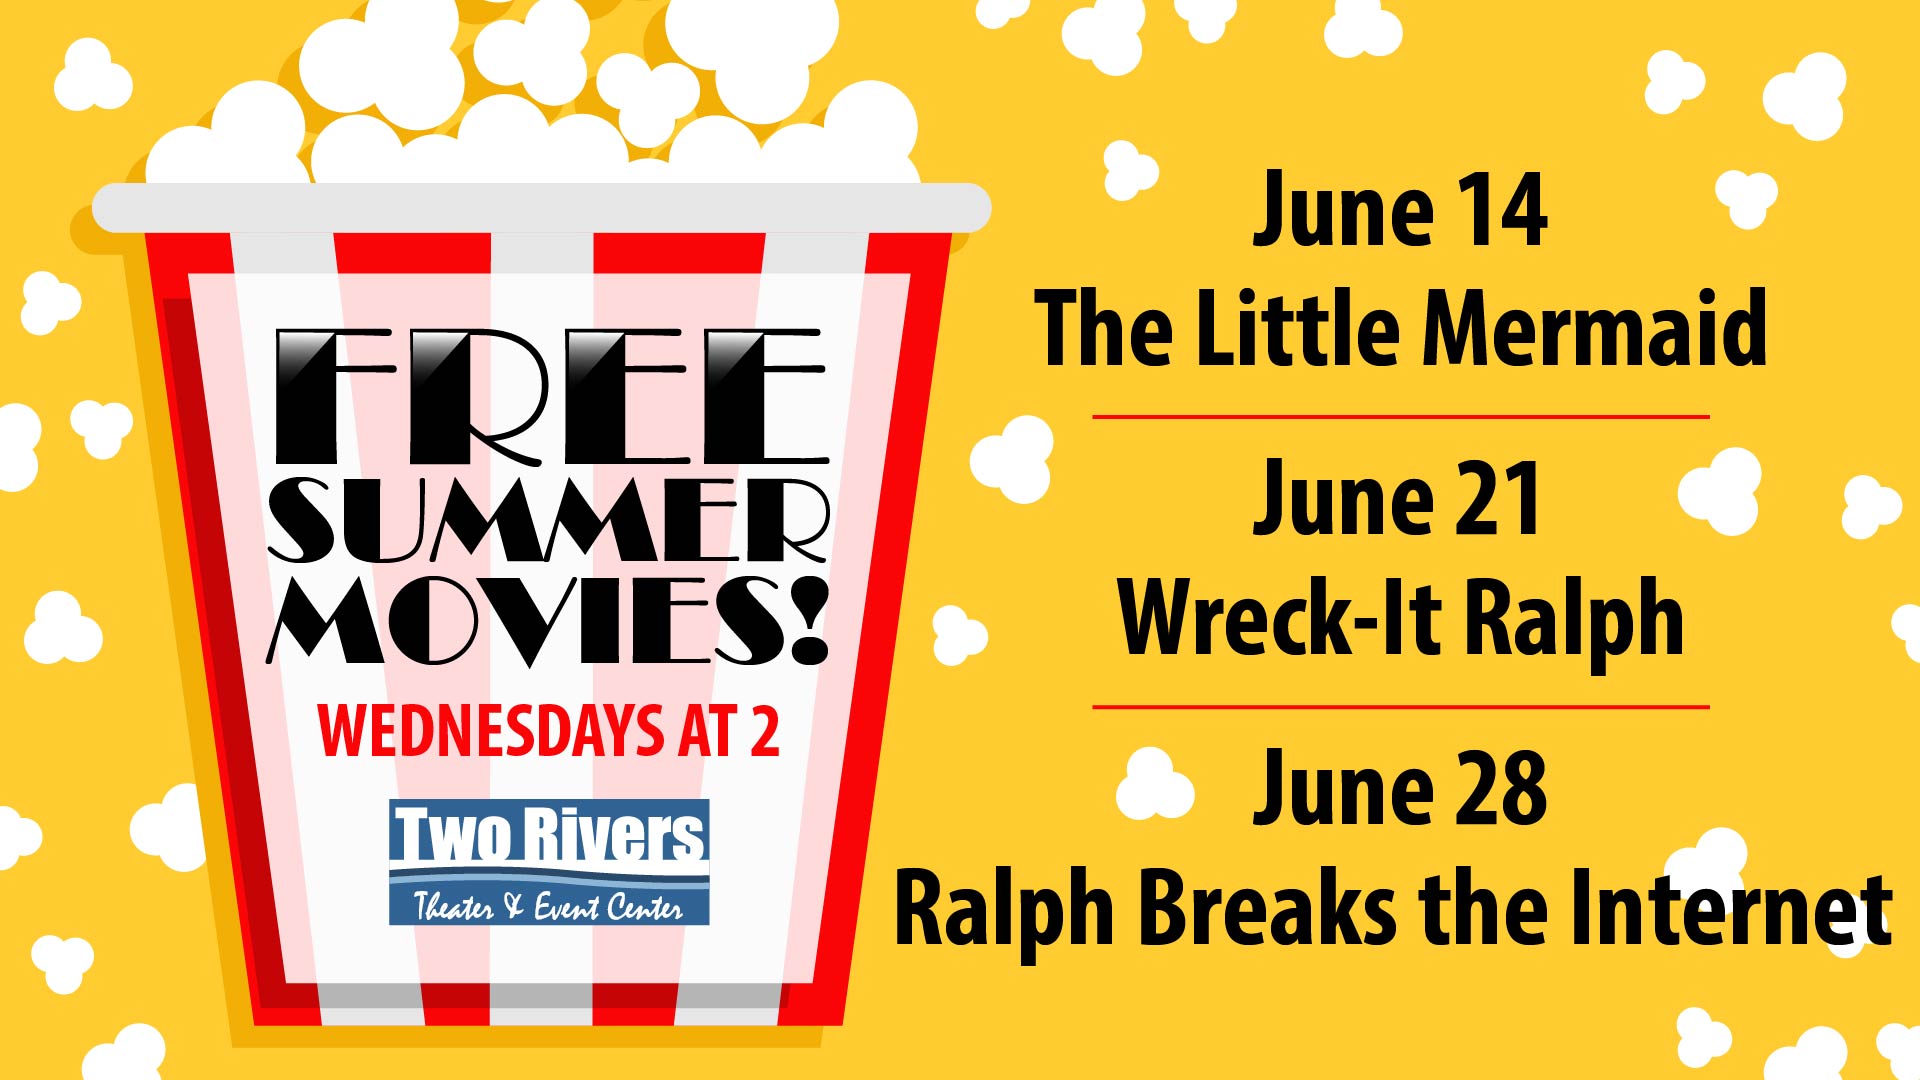 Free Summer Movies